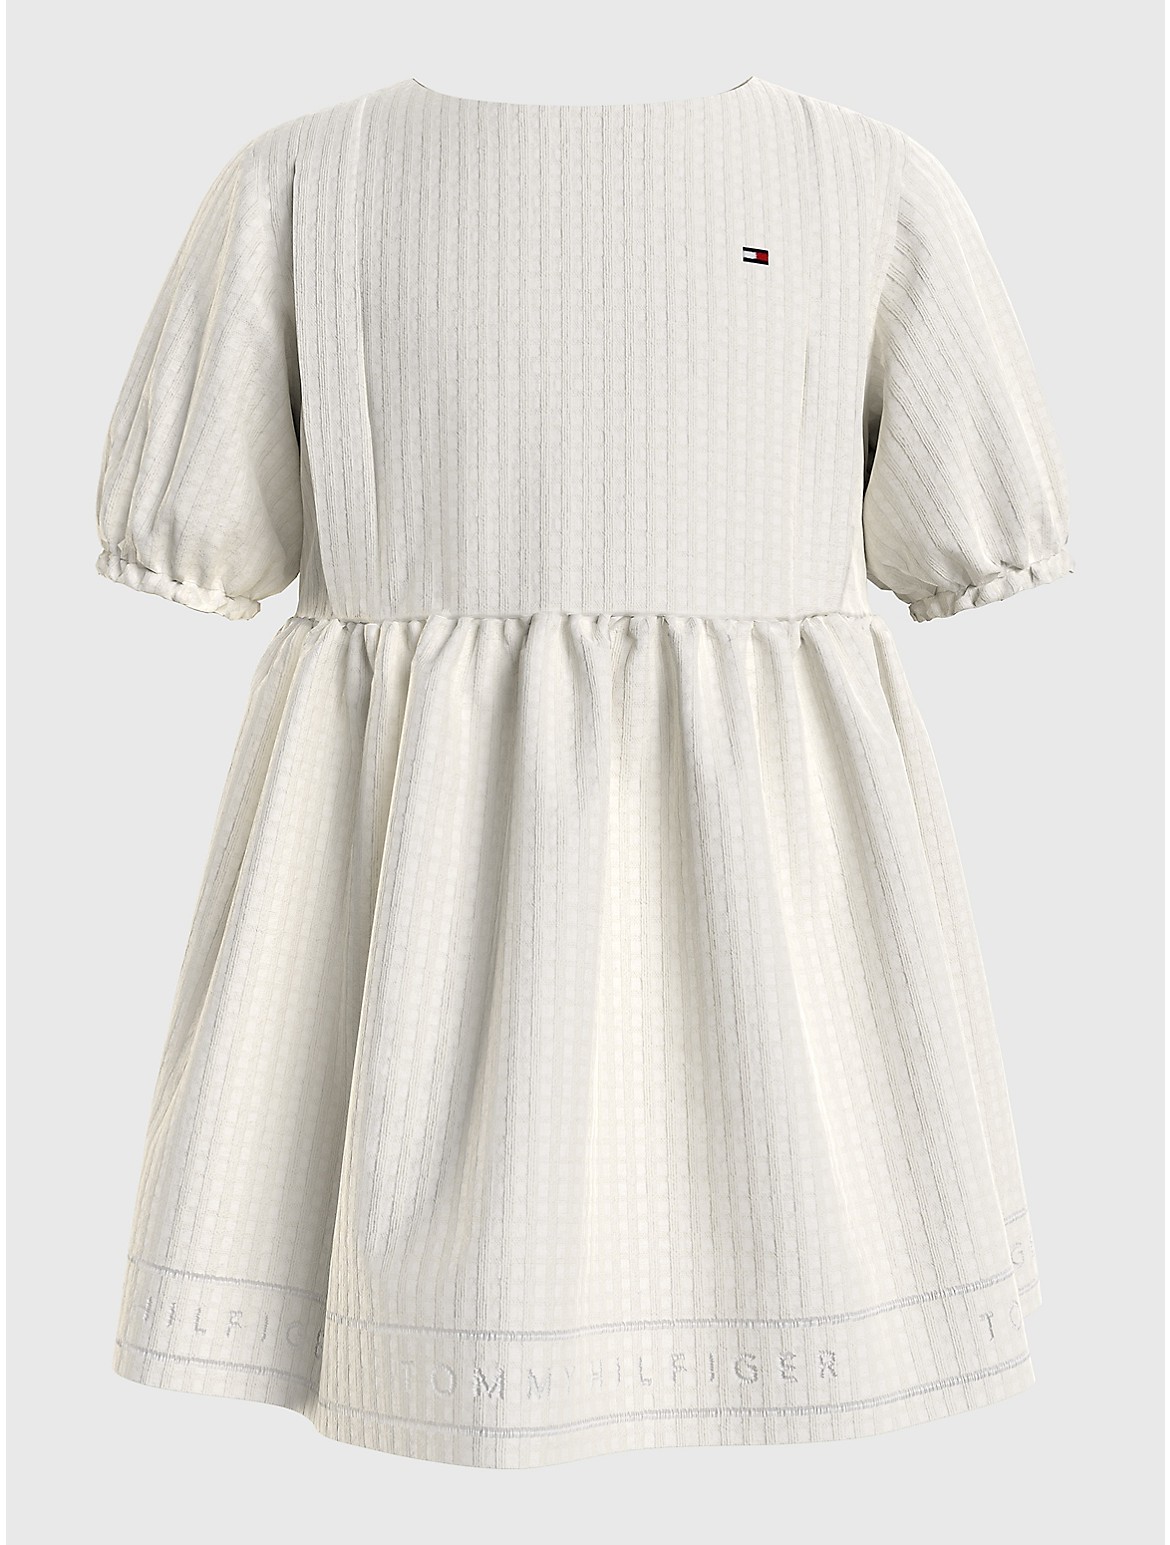 Tommy Hilfiger Girls' Babies' Waffle Knit Dress - White - 12M